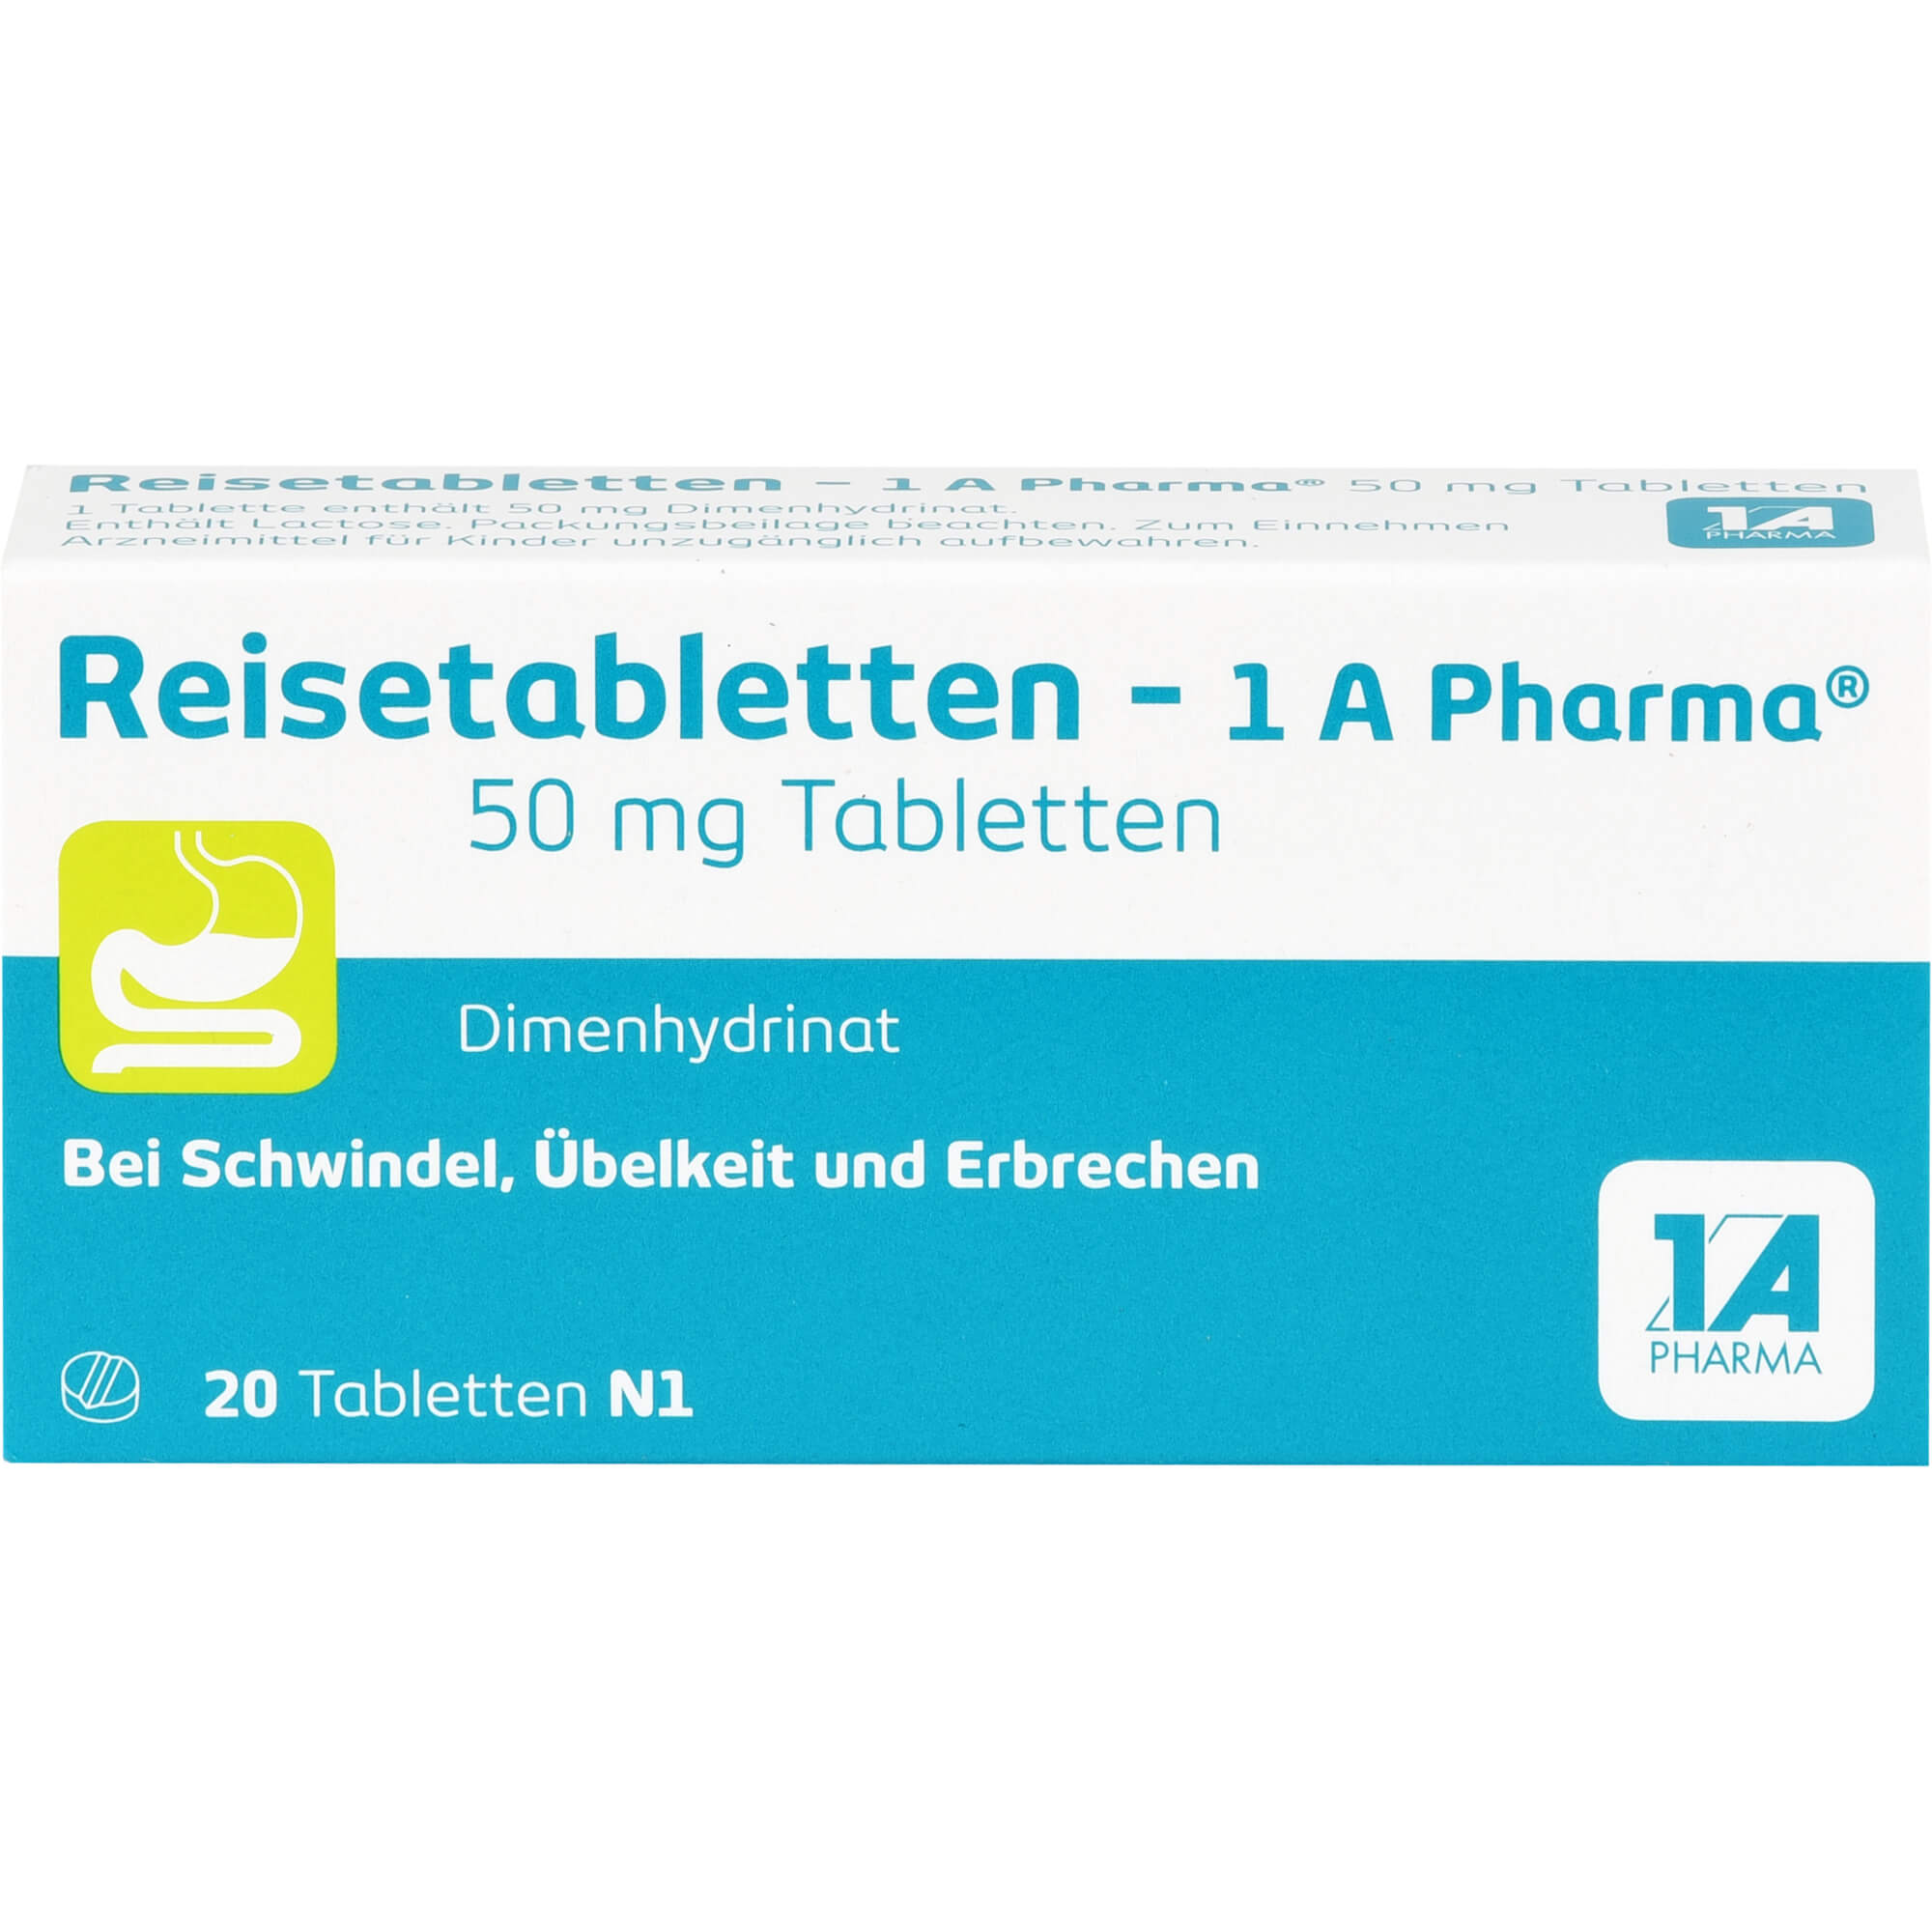 REISETABLETTEN-1A Pharma